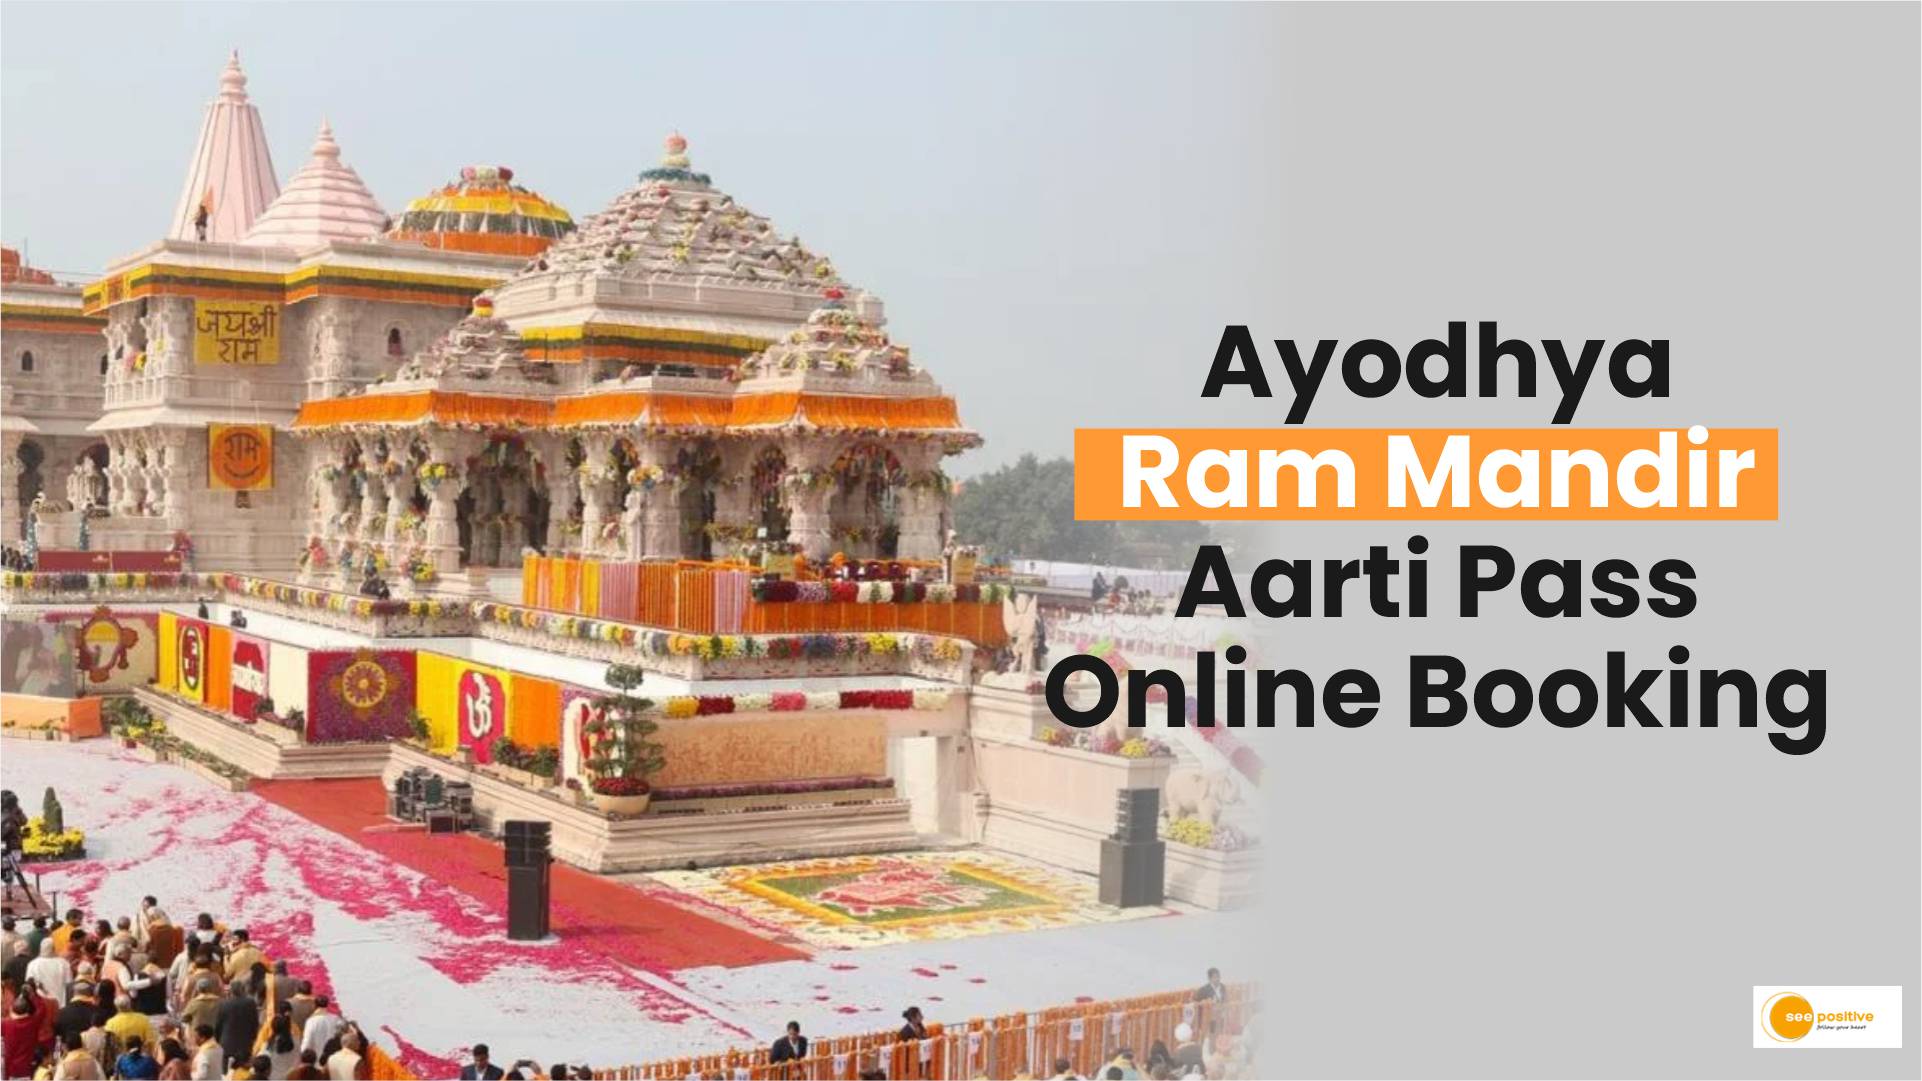 Ram Mandir आरती में शामिल होने के लिए कैसे करें booking?